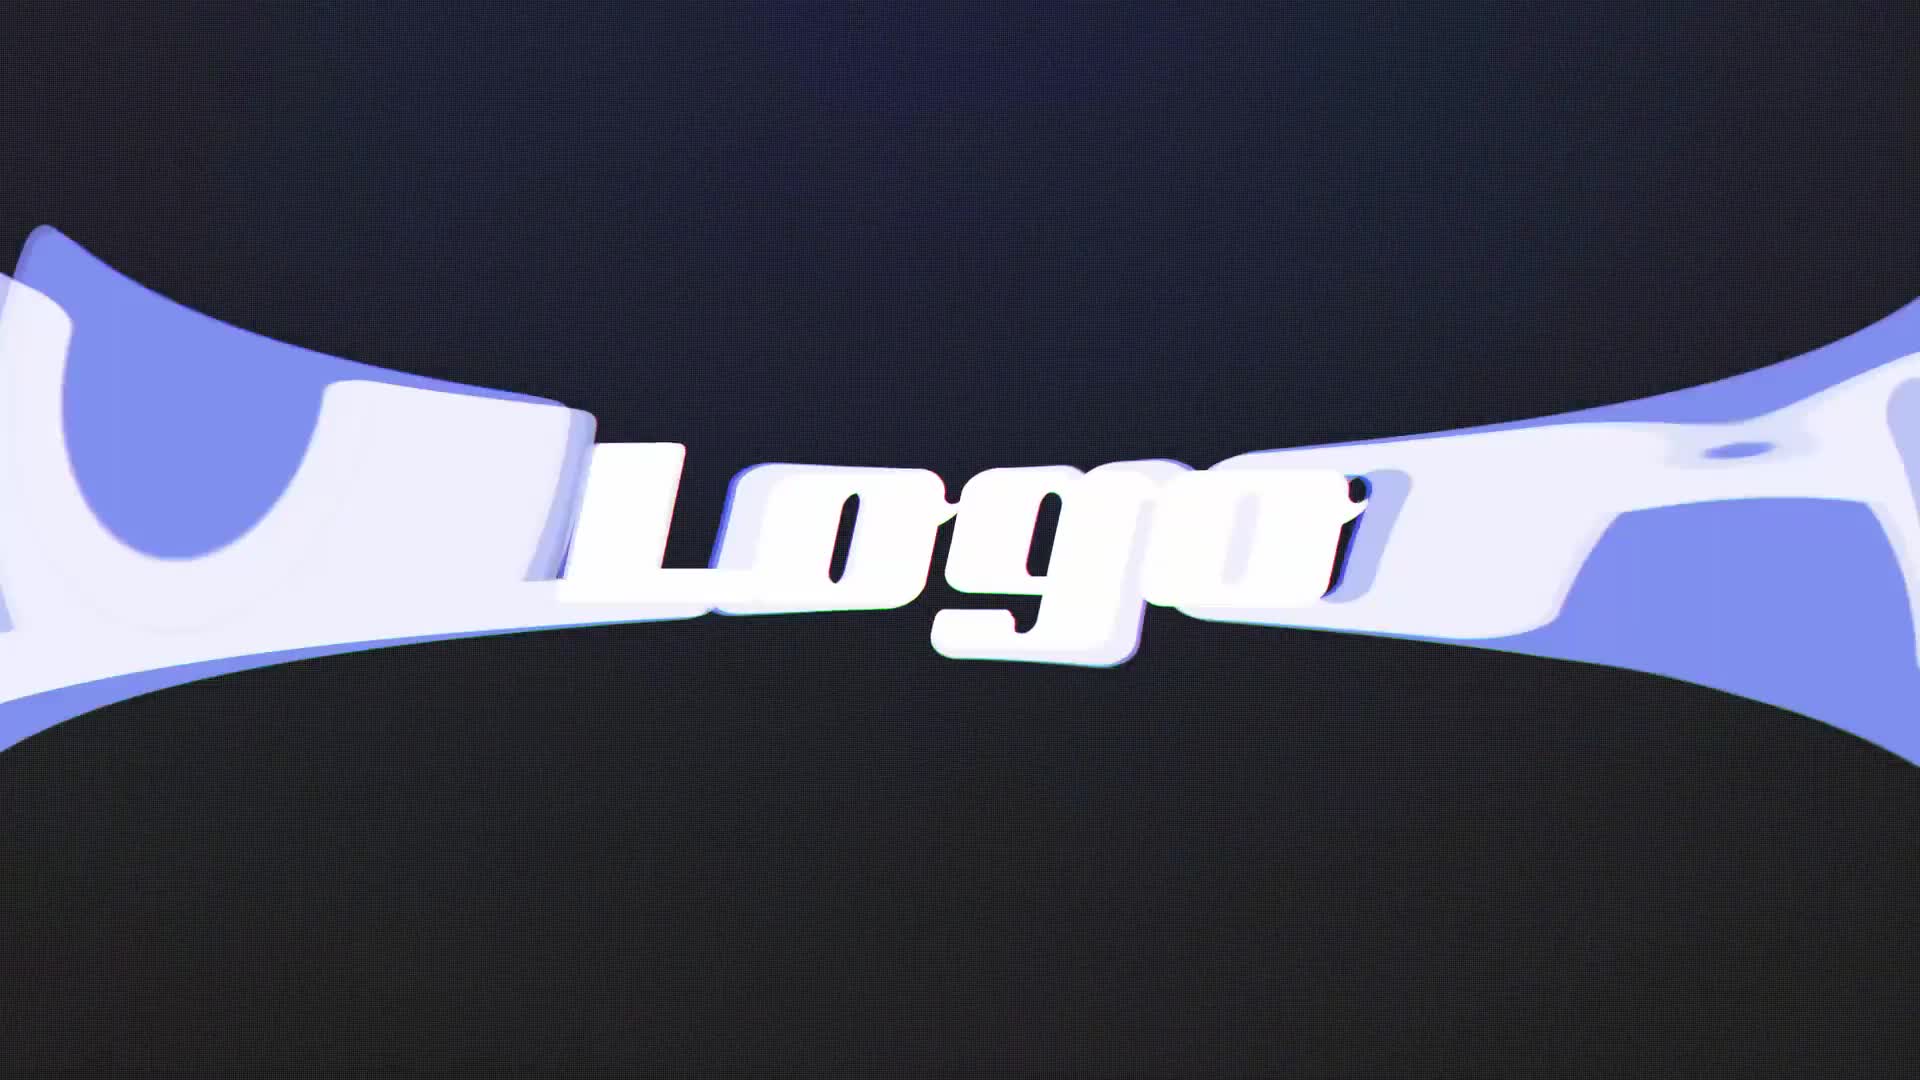 Fast Glitch RGB Logo Reveal Premiere Pro Videohive 32318622 Premiere Pro Image 1